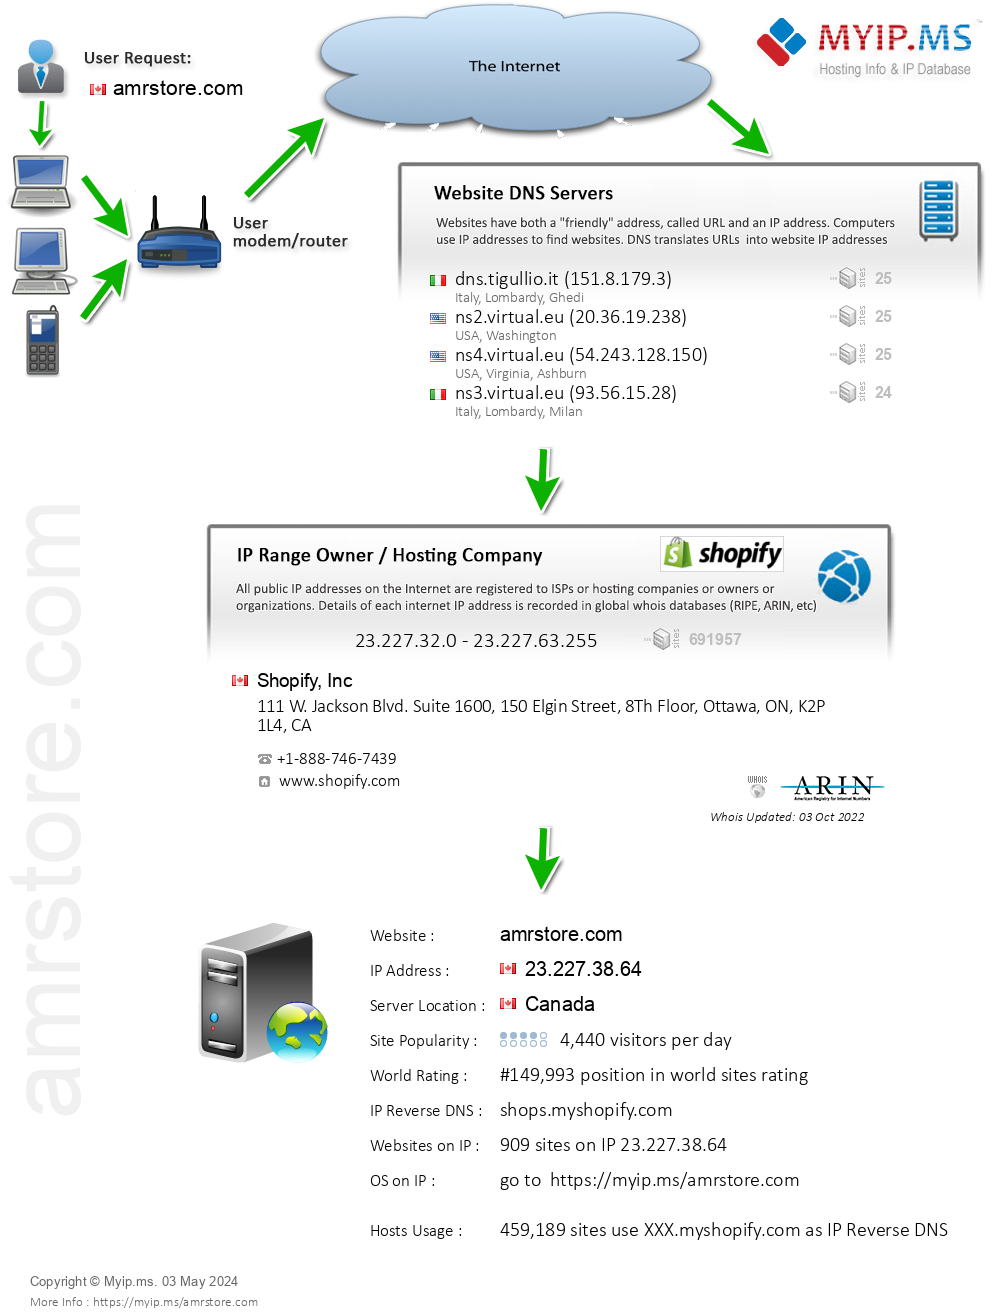 Amrstore.com - Website Hosting Visual IP Diagram